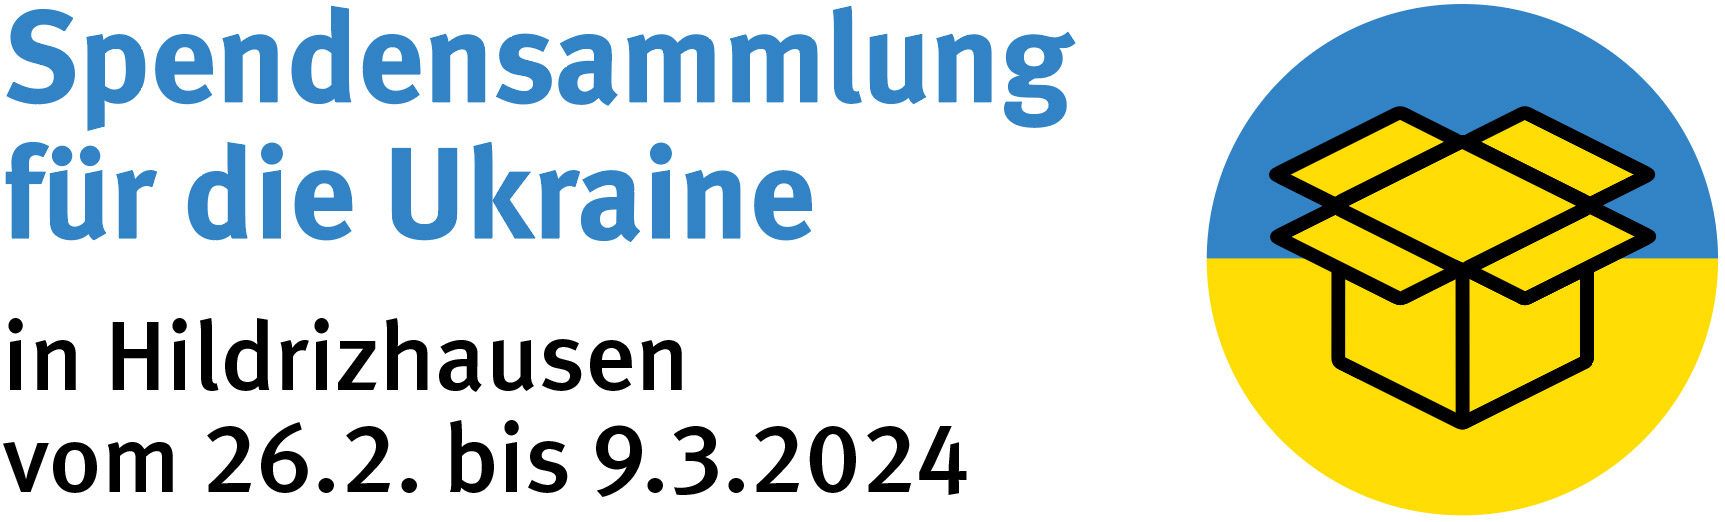 Spendensammlung Ukraine in Hildrizhausen vom 26.2. bis 9.3.2024